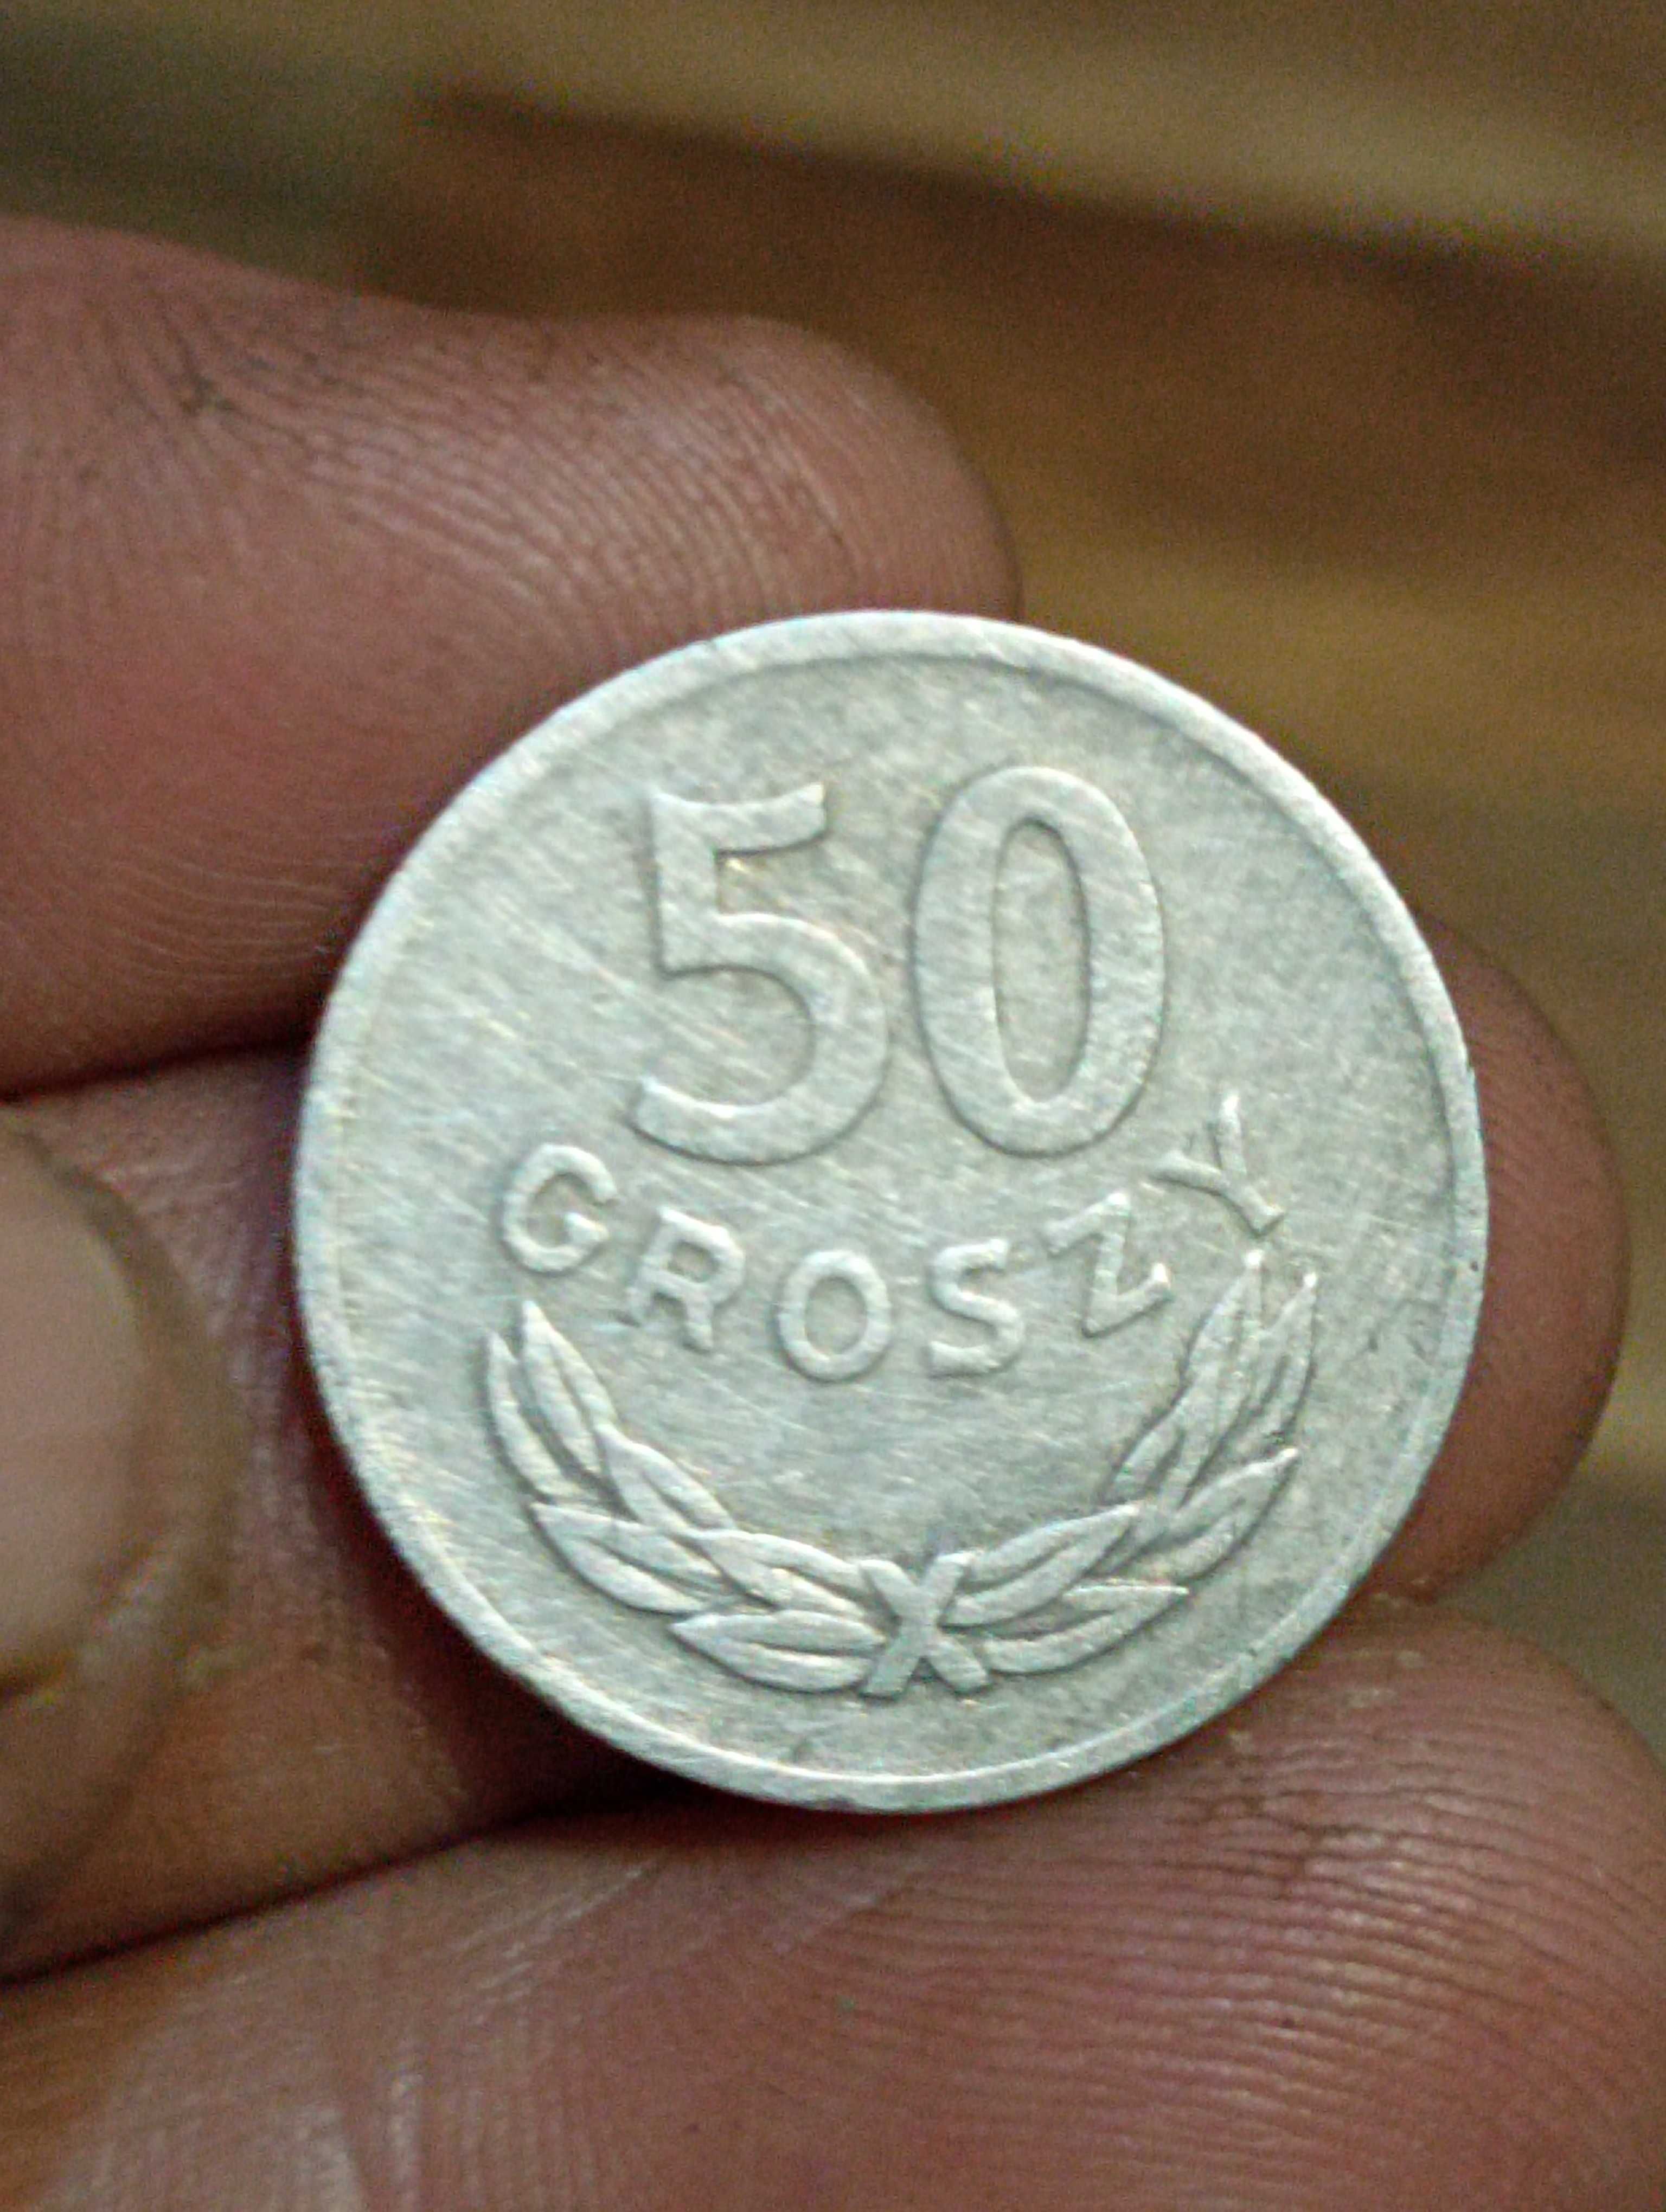 Moneta 50 groszy 1973 rok zzm